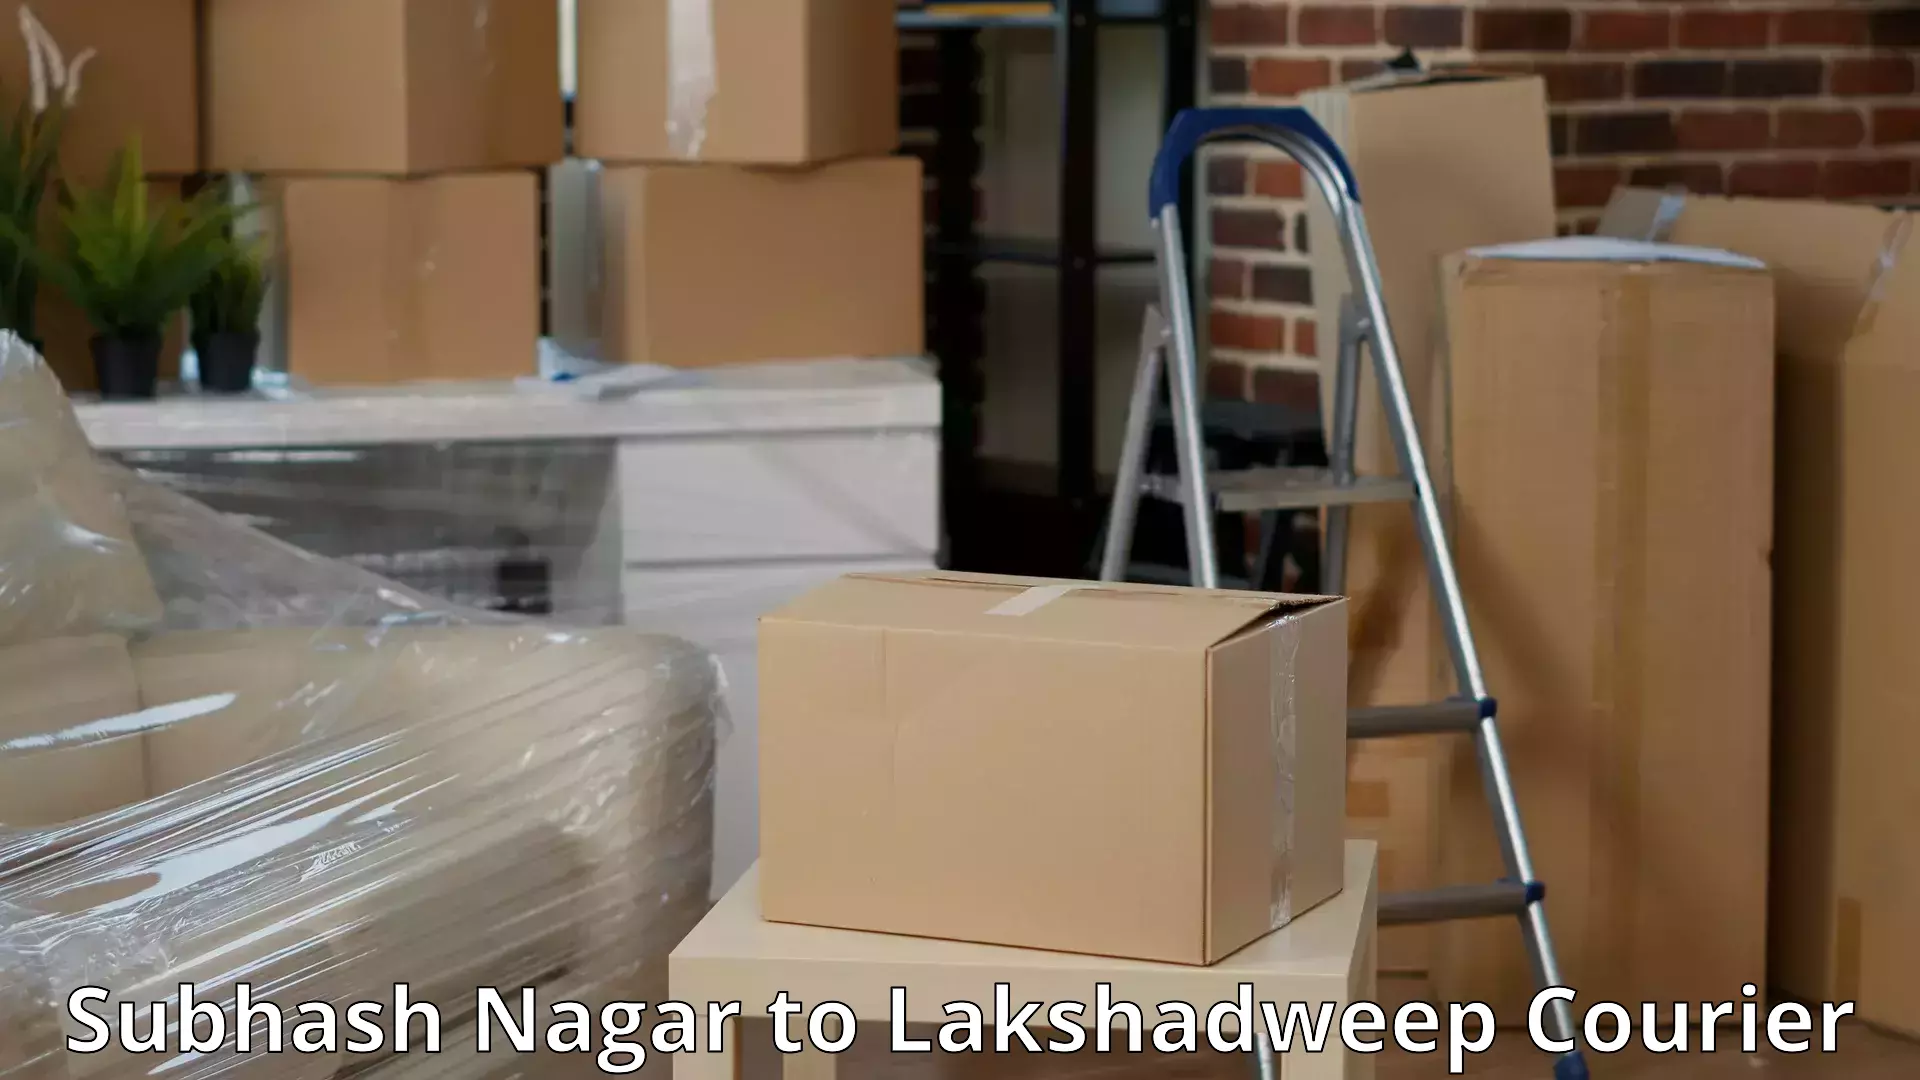 Packing and moving services Subhash Nagar to Lakshadweep